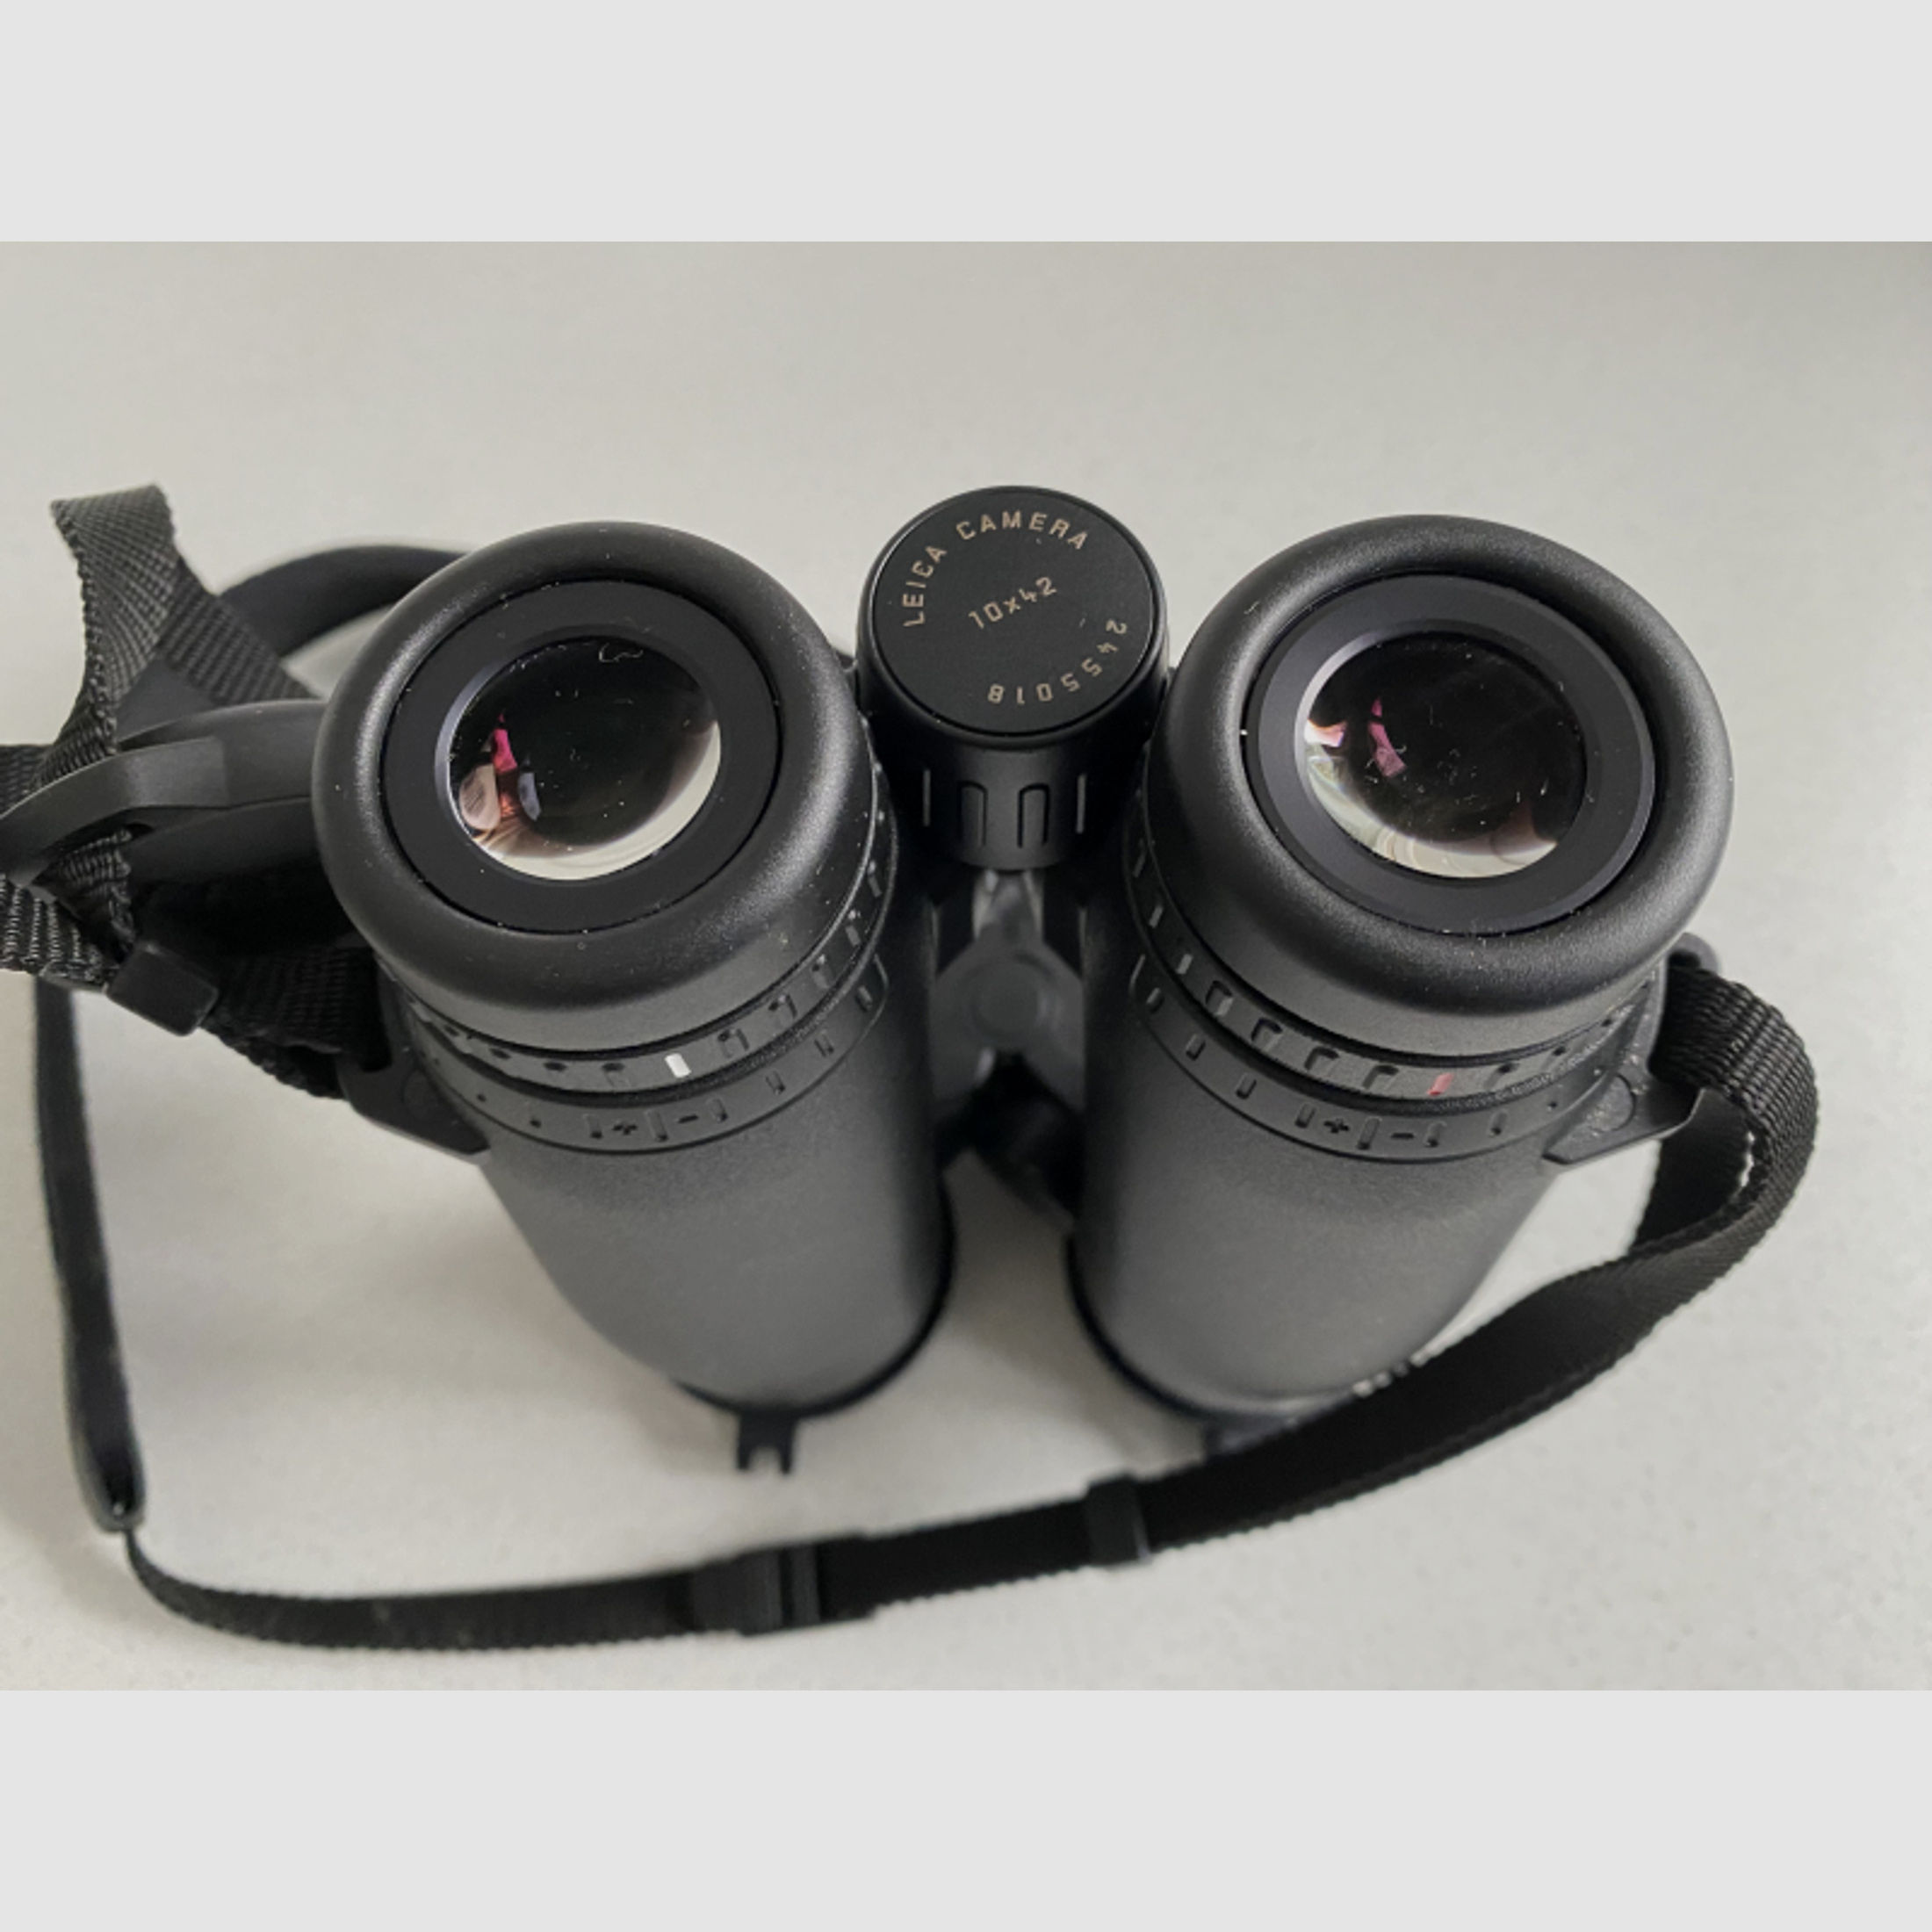 Fernglas Leica Geovid 10x42 Pro in OVP